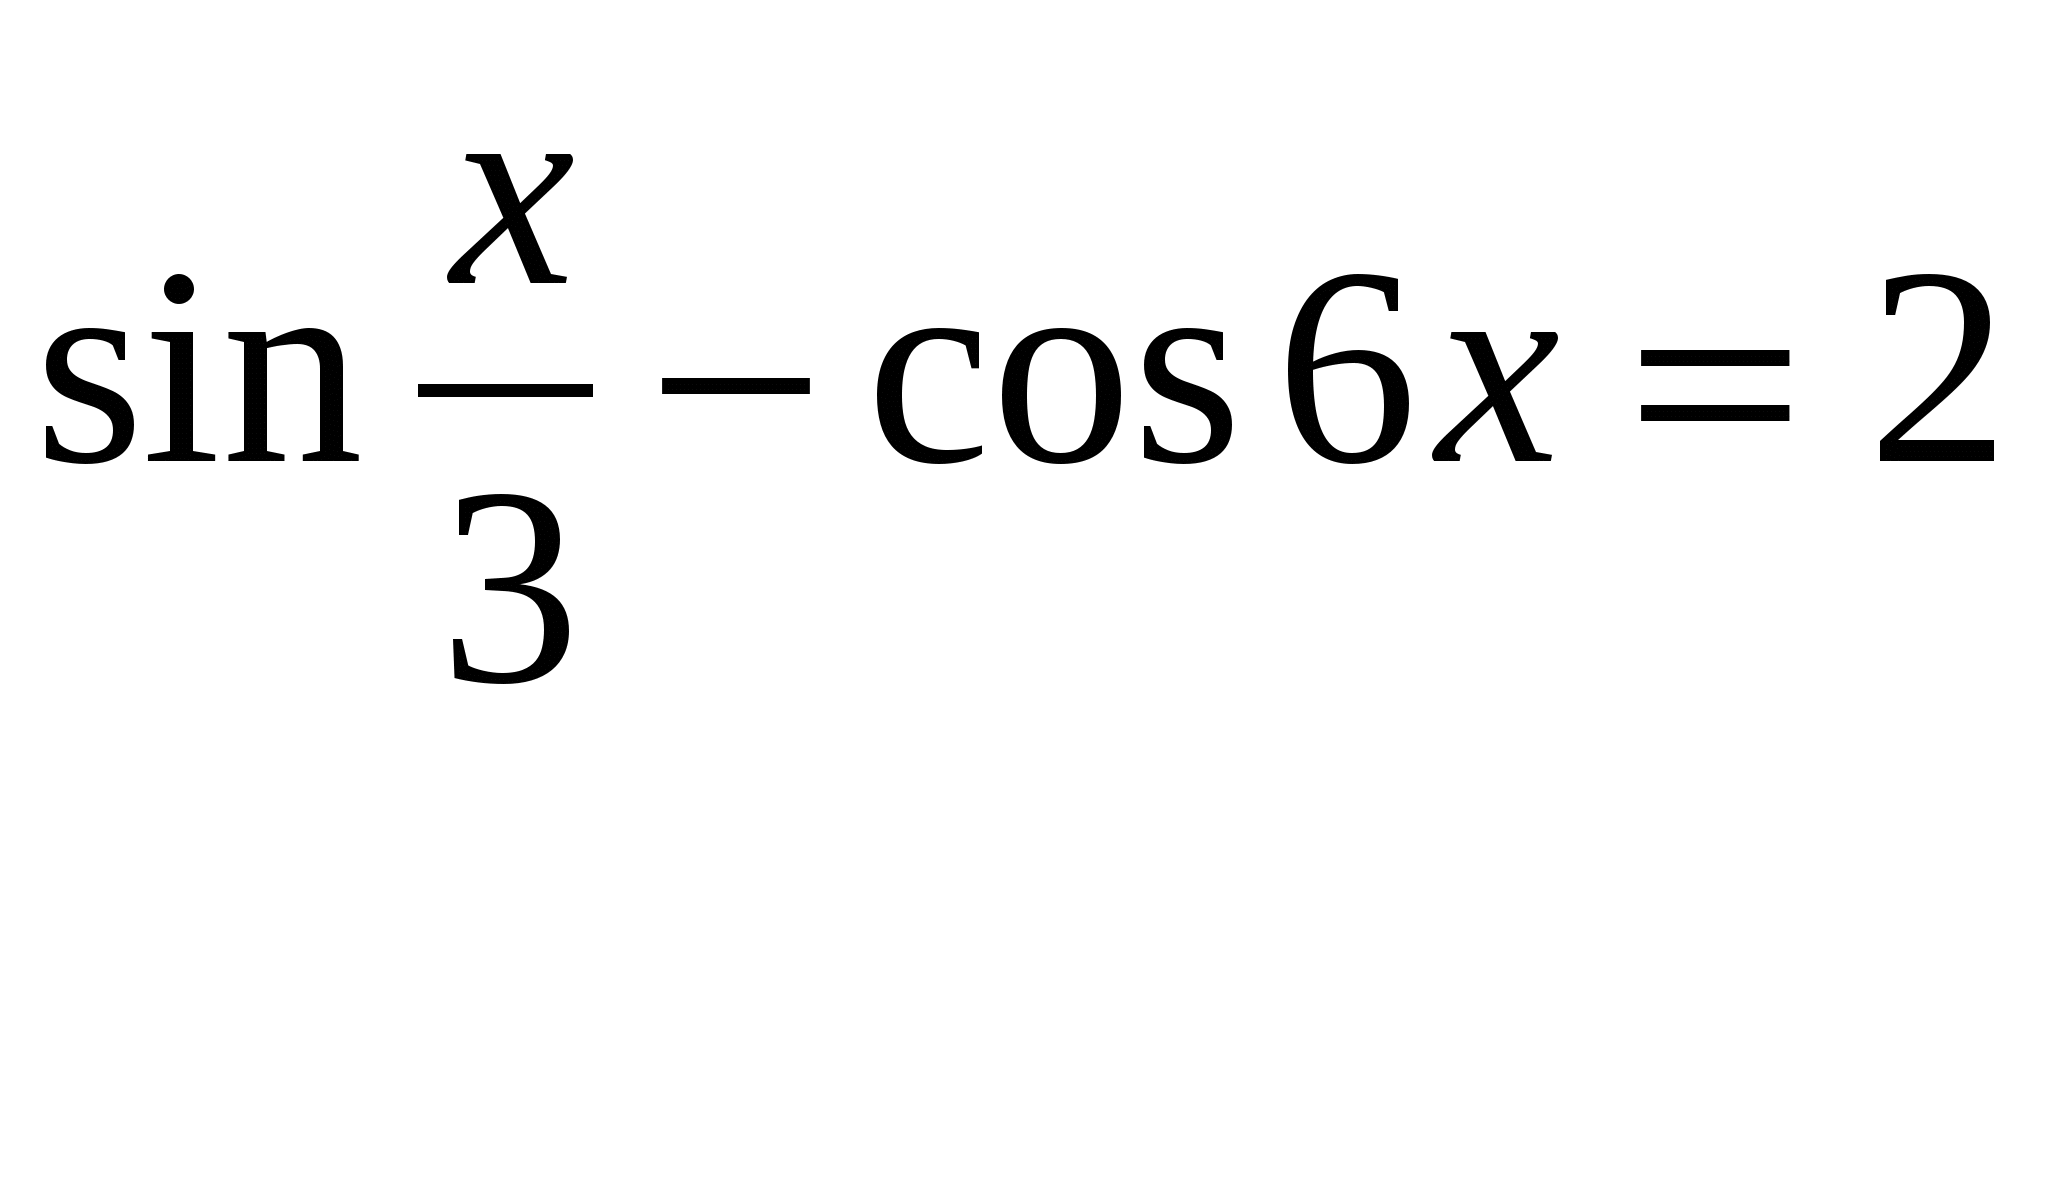 Решение уравнений ( 11 класс)